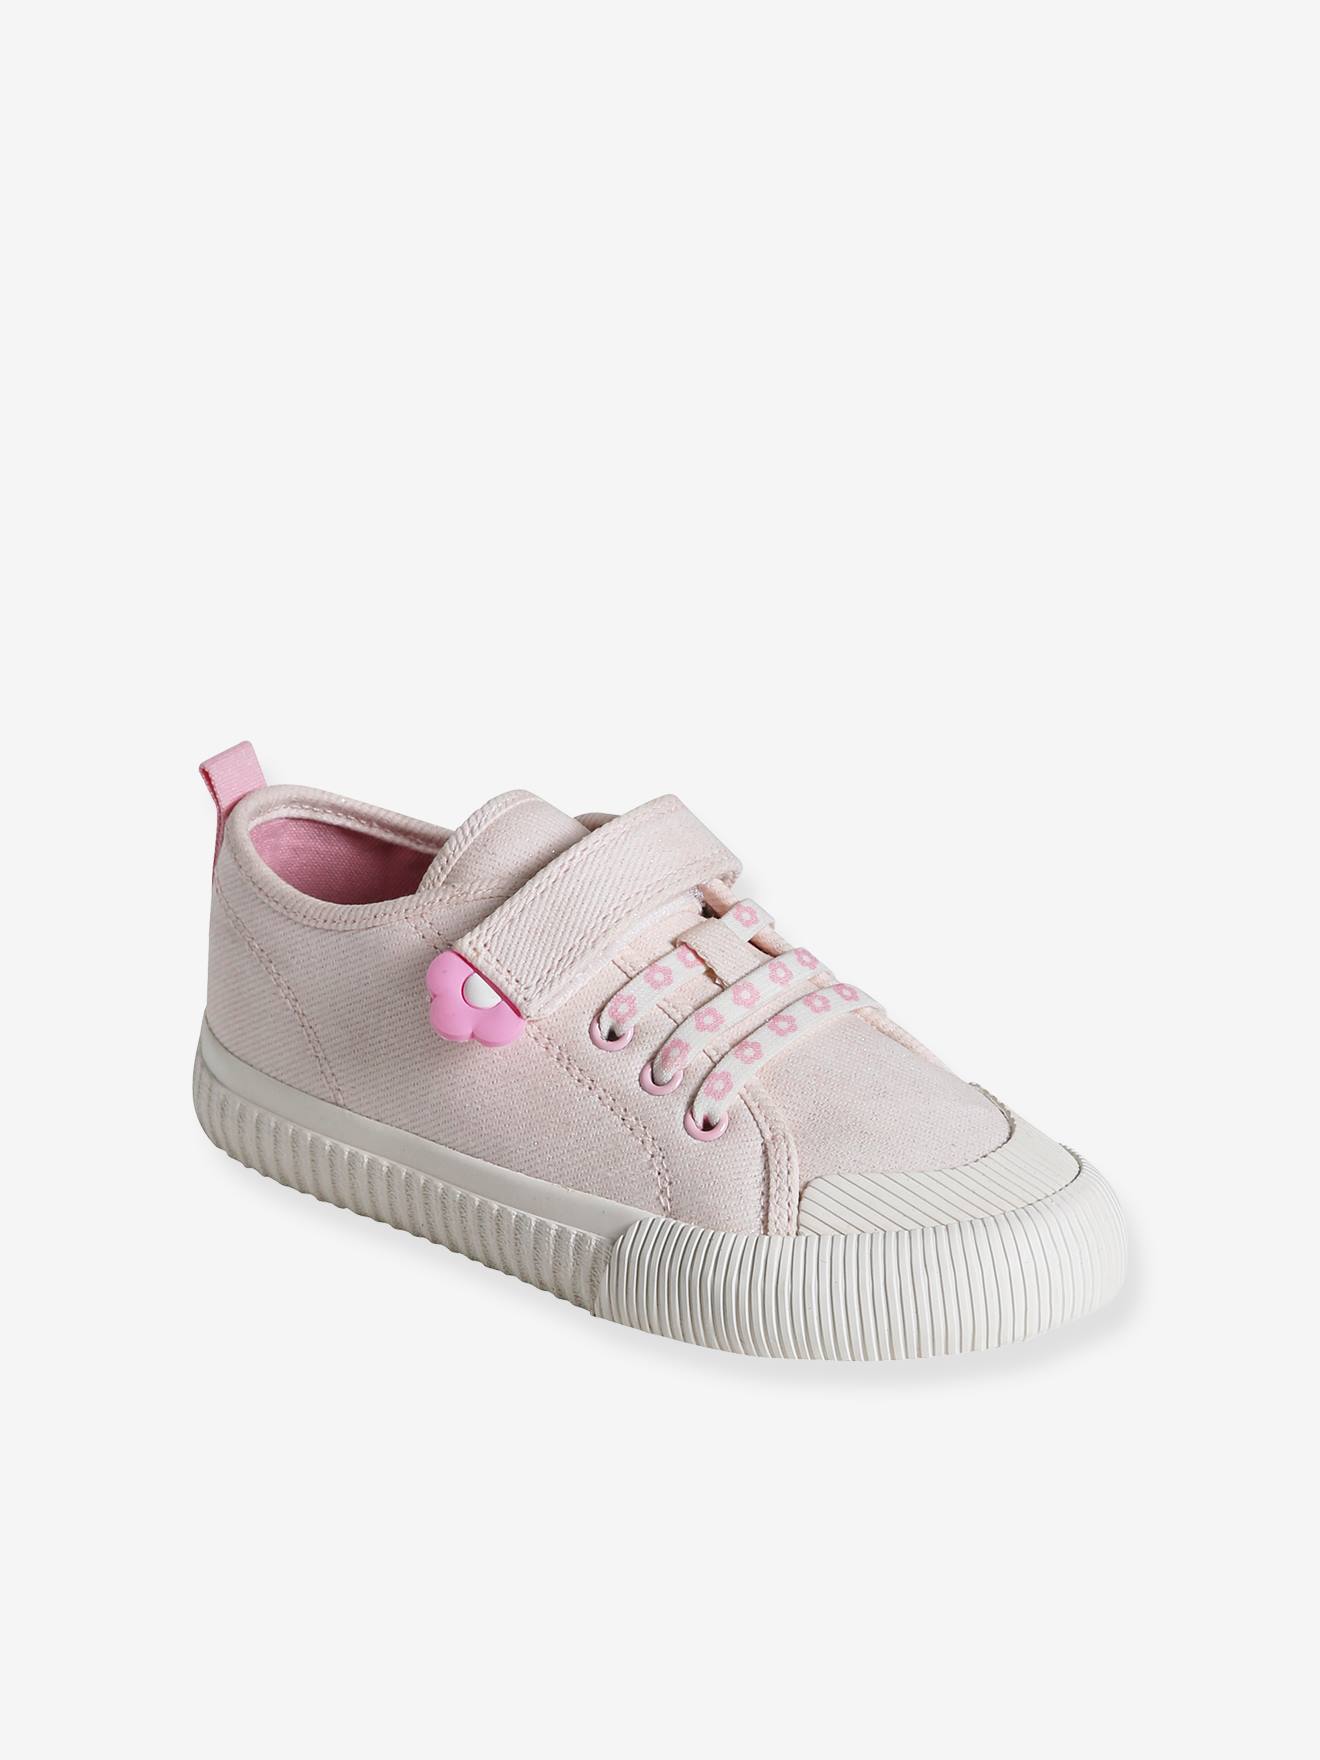 VERTBAUDET Zapatillas de lona con cordones elásticos para niña, especial autonomía rosa rosa pálido